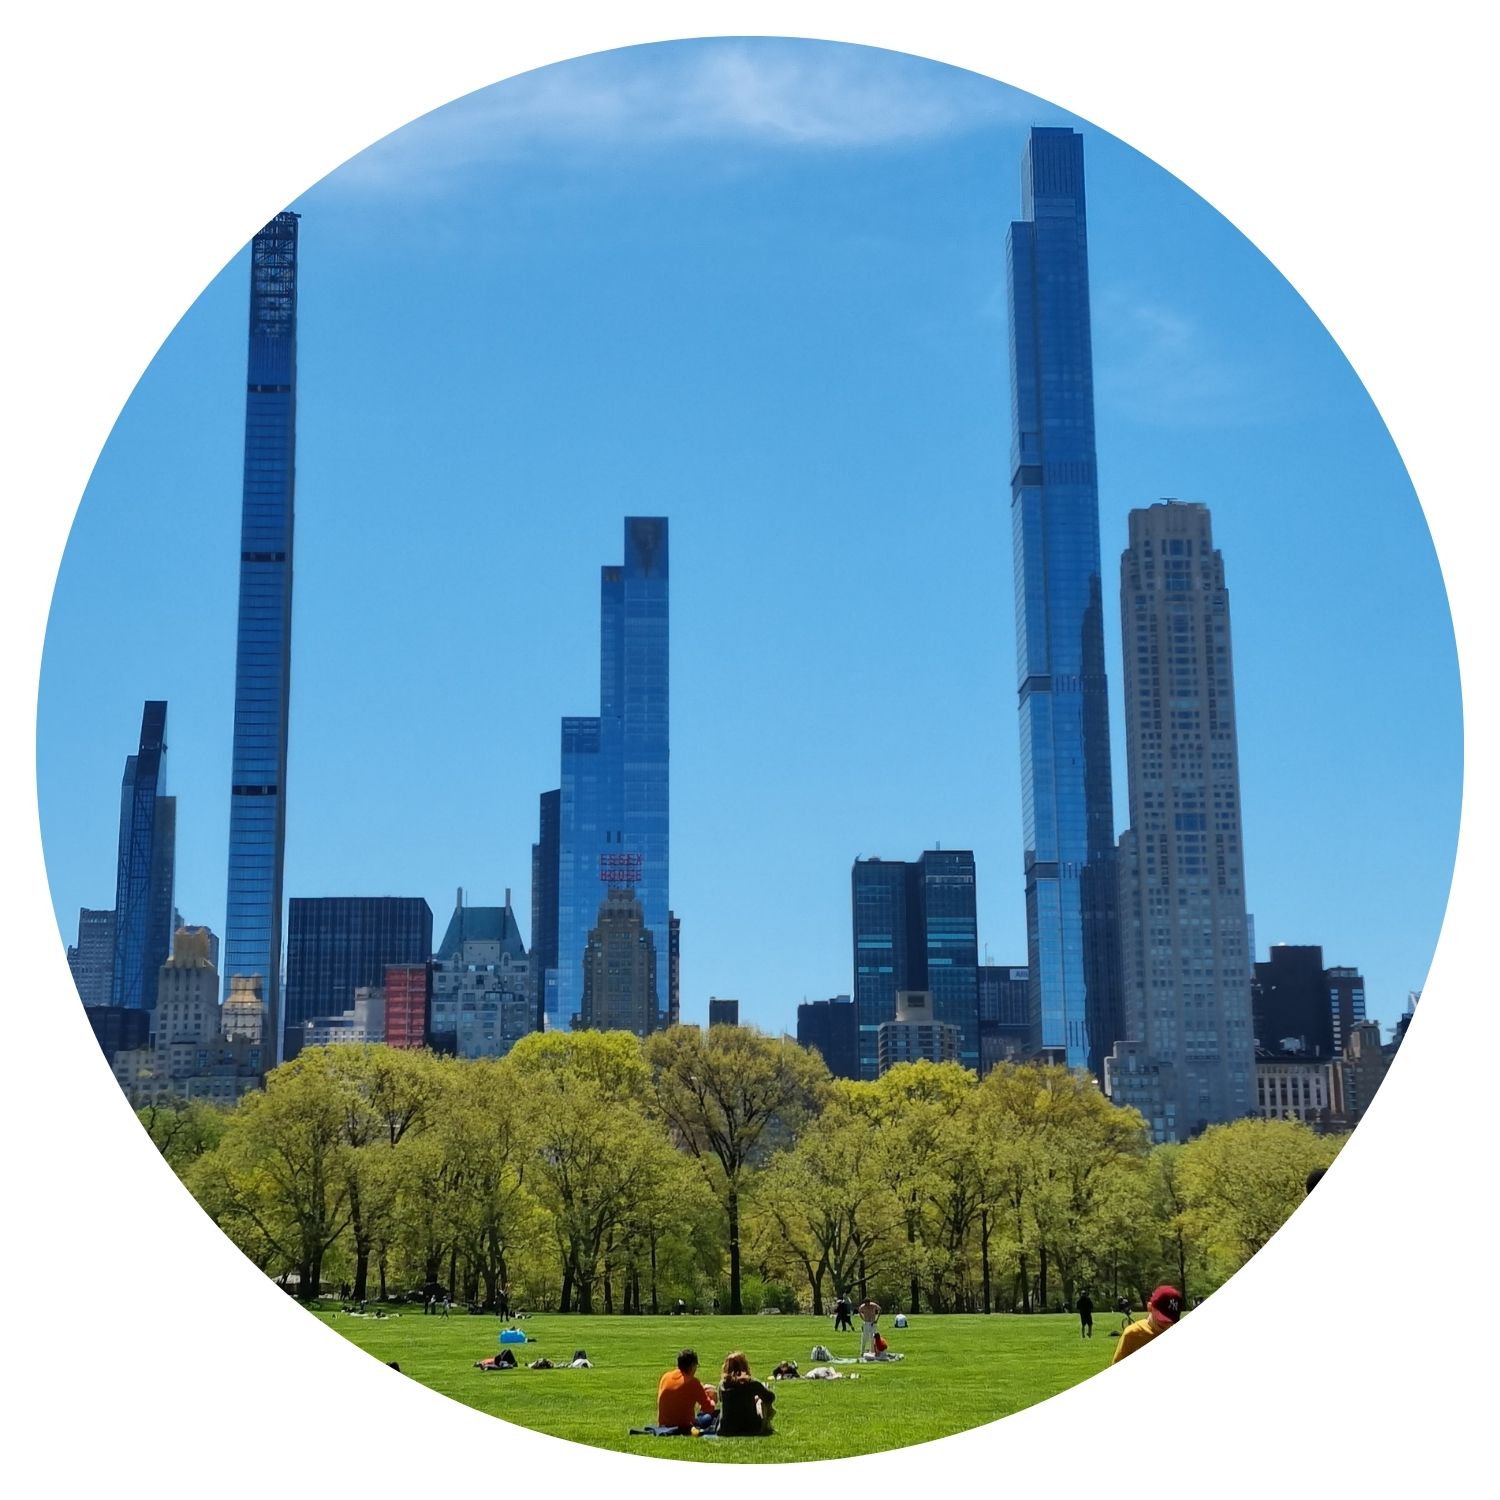 Vue sur les gratte-ciels de New York depuis Central Park, avec des personnes se relaxant sur la pelouse sous un ciel bleu clair.